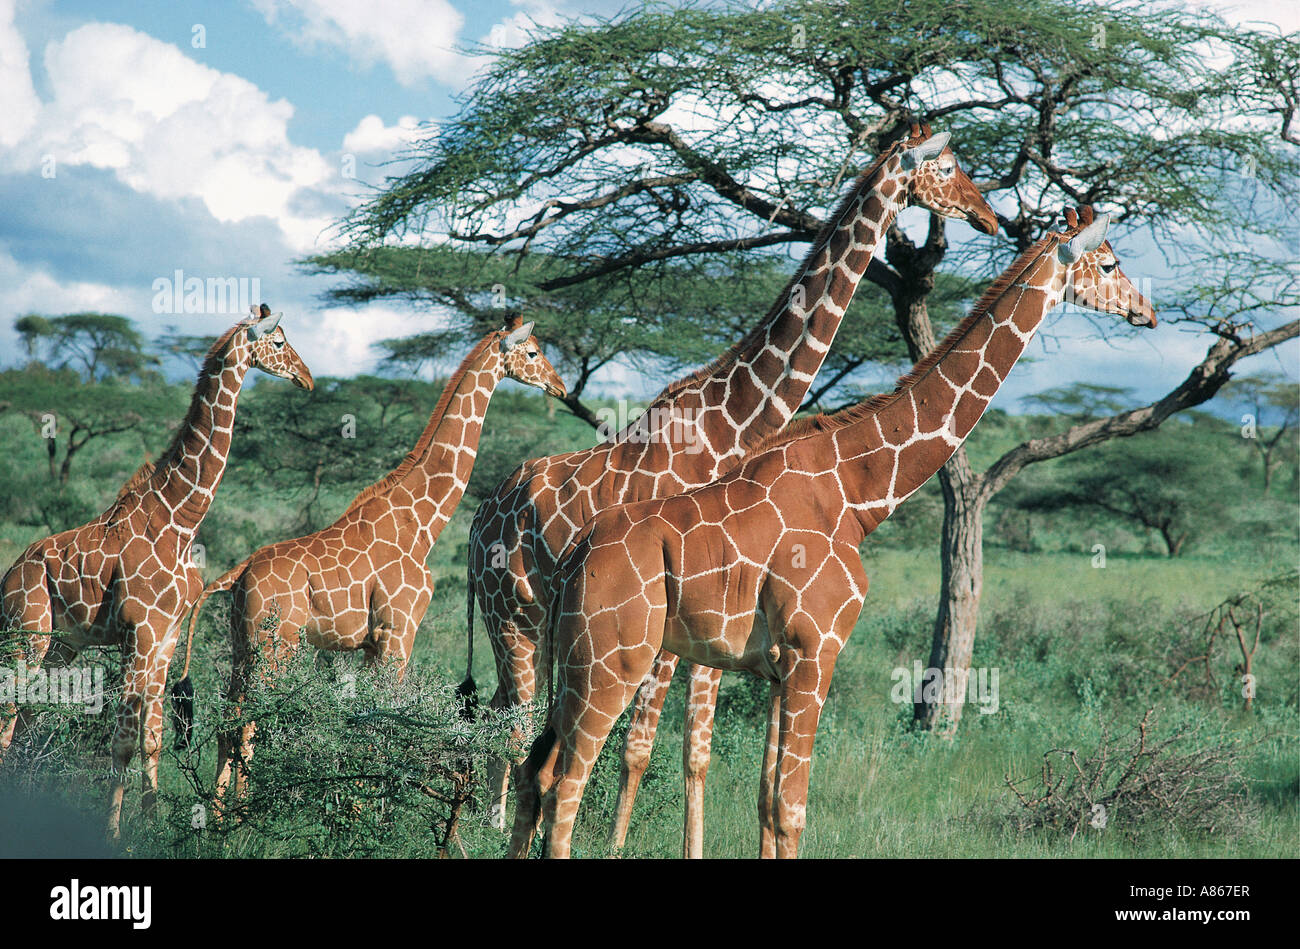 Quatre giraffe réticulée dans la posture adoptée en voyant attentif un prédateur de la réserve nationale de Samburu, Kenya Banque D'Images